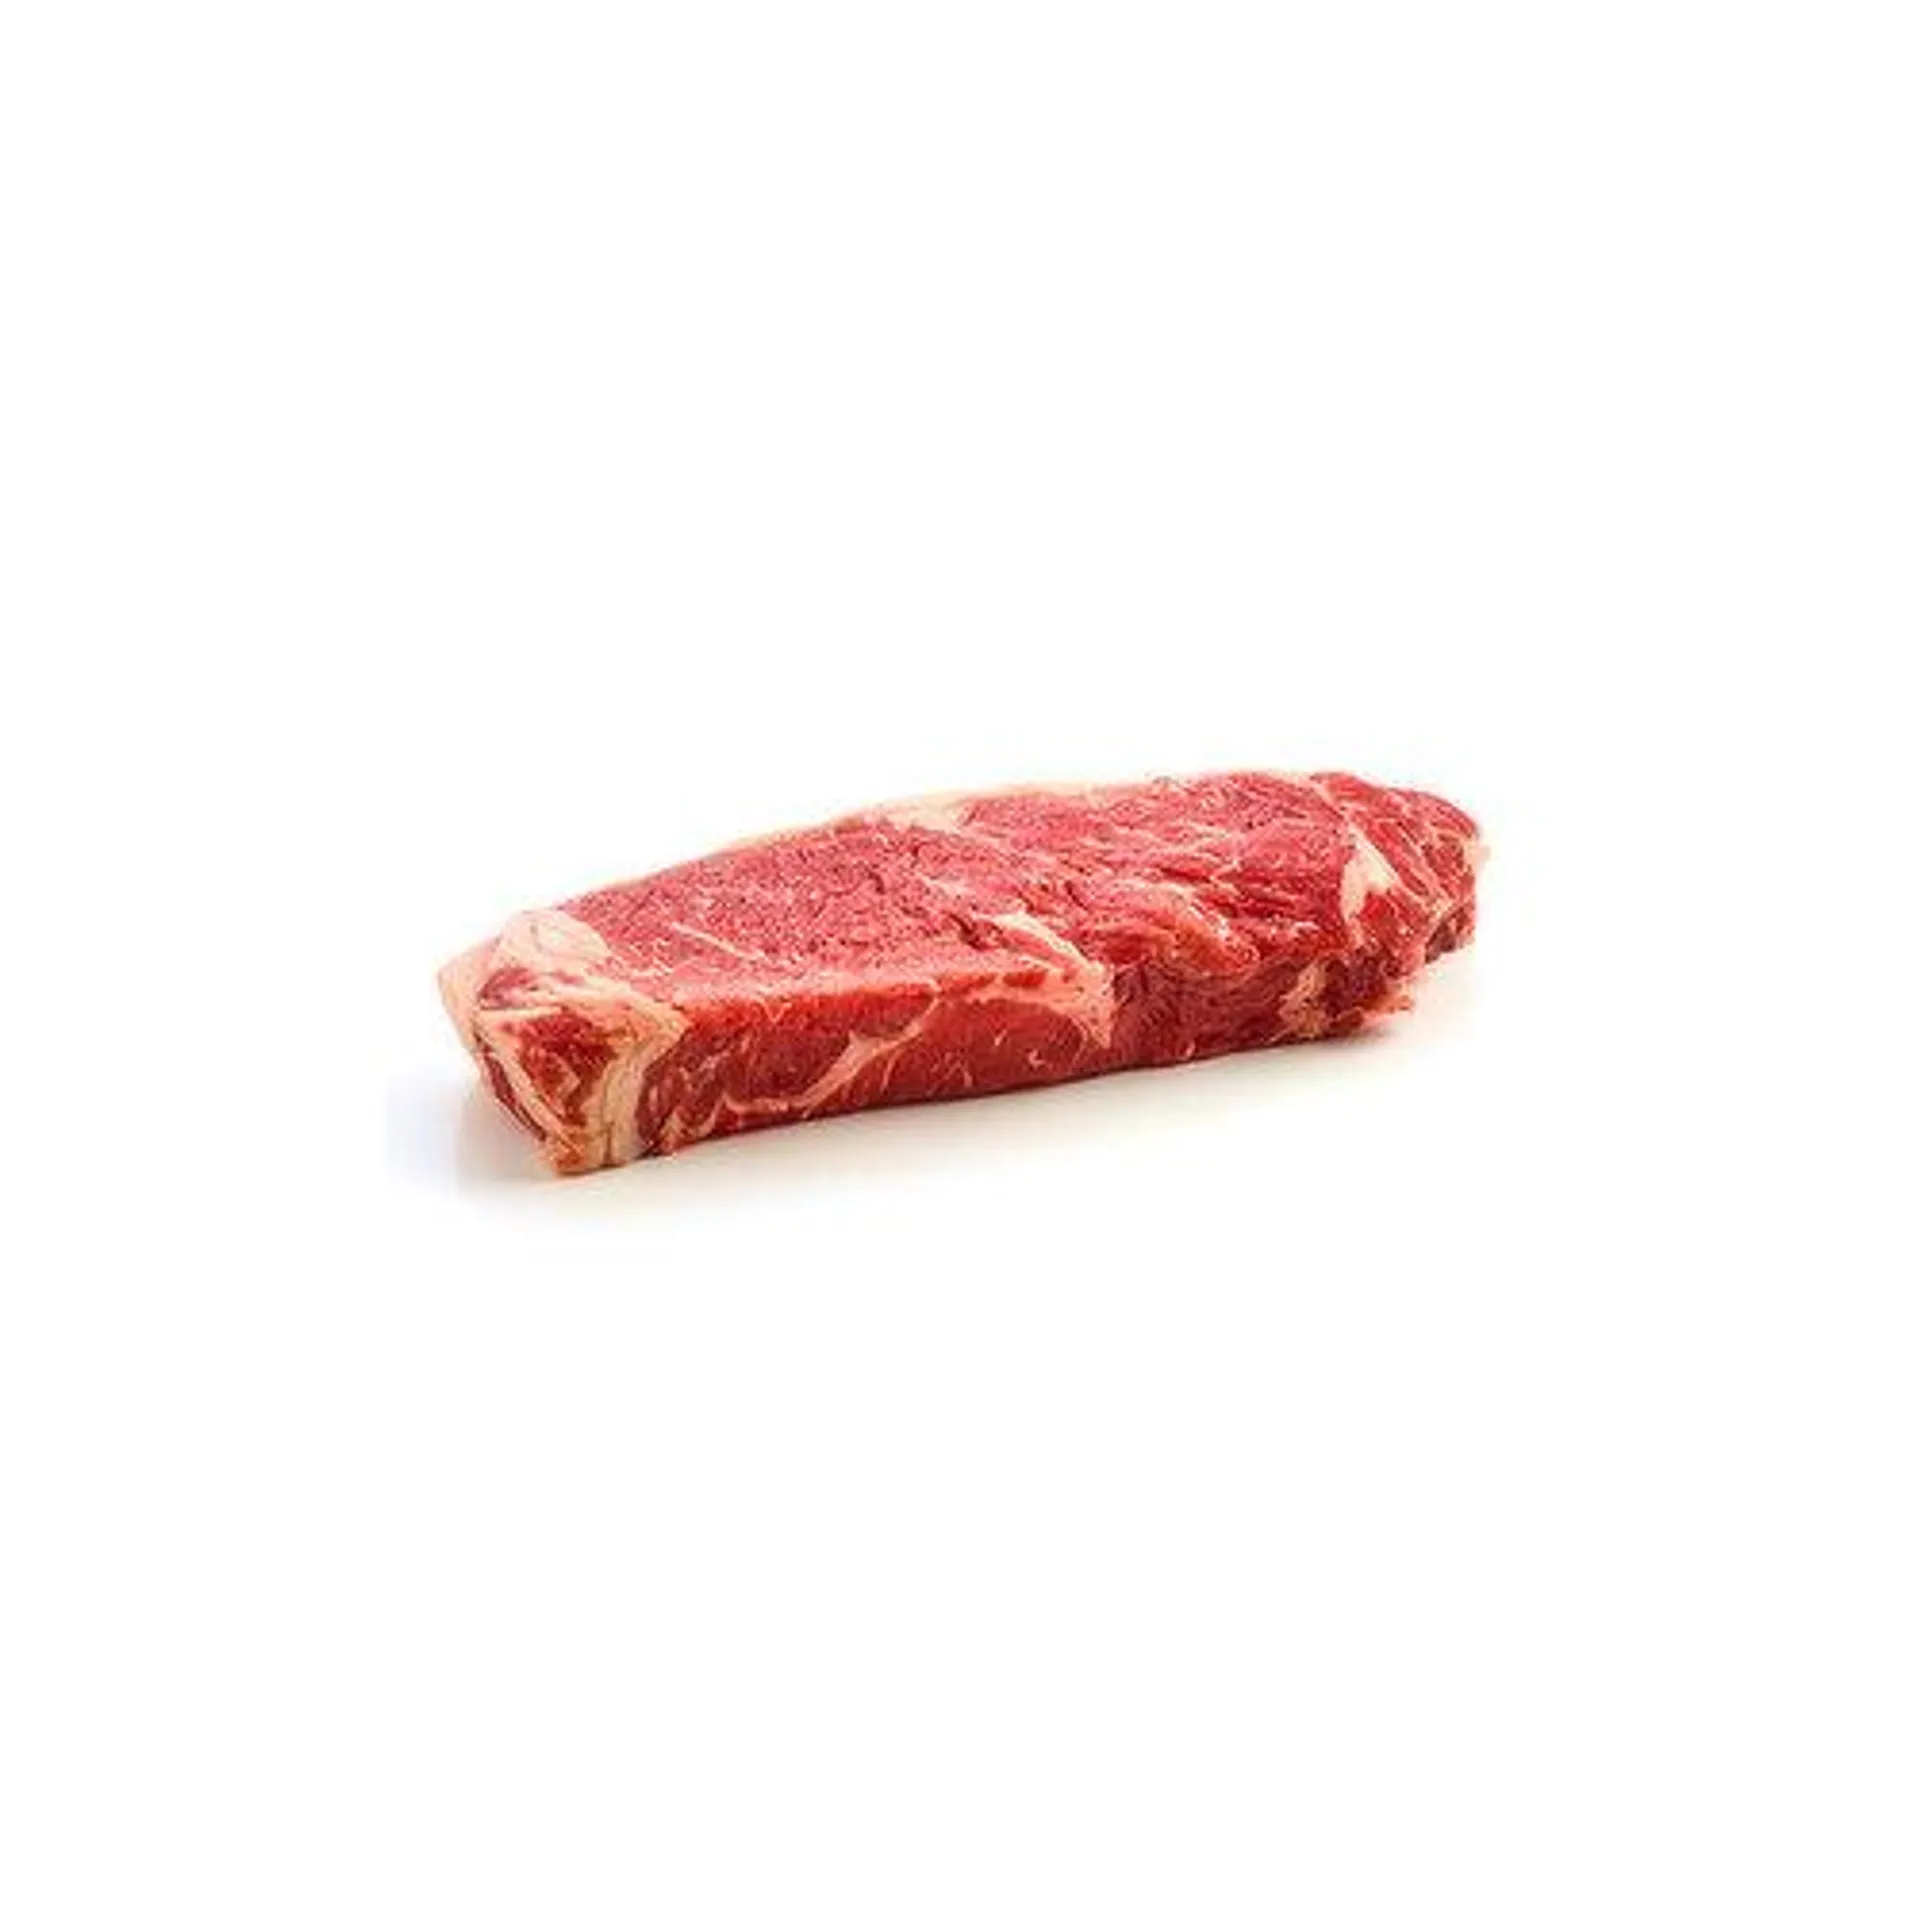 Certified Angus Beef Beef New York Strip Steak - 1.23 Pound